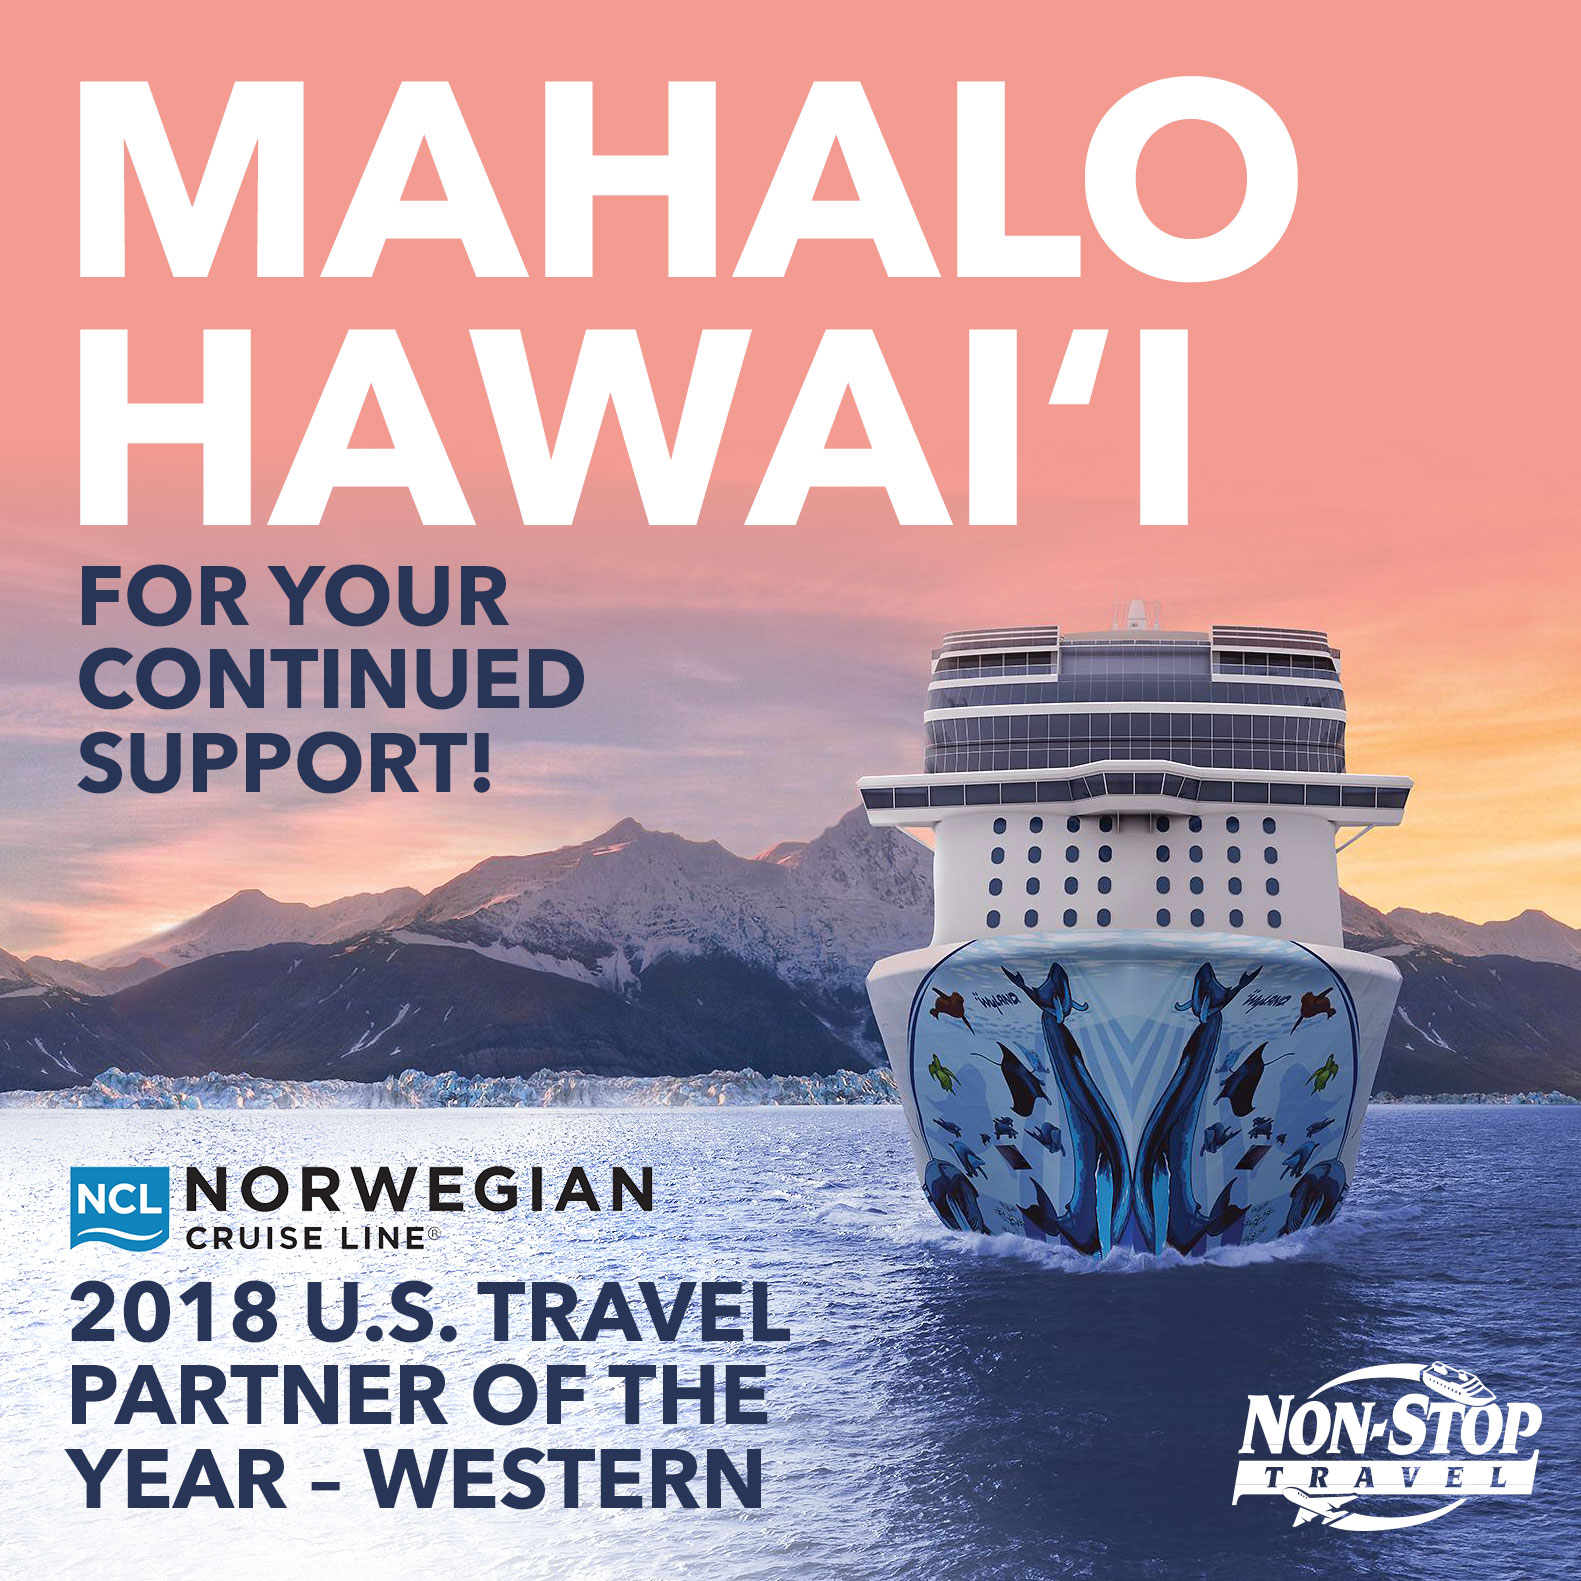 Norwegian Cruise Line 2018 U.S. Travel Partner of the Year